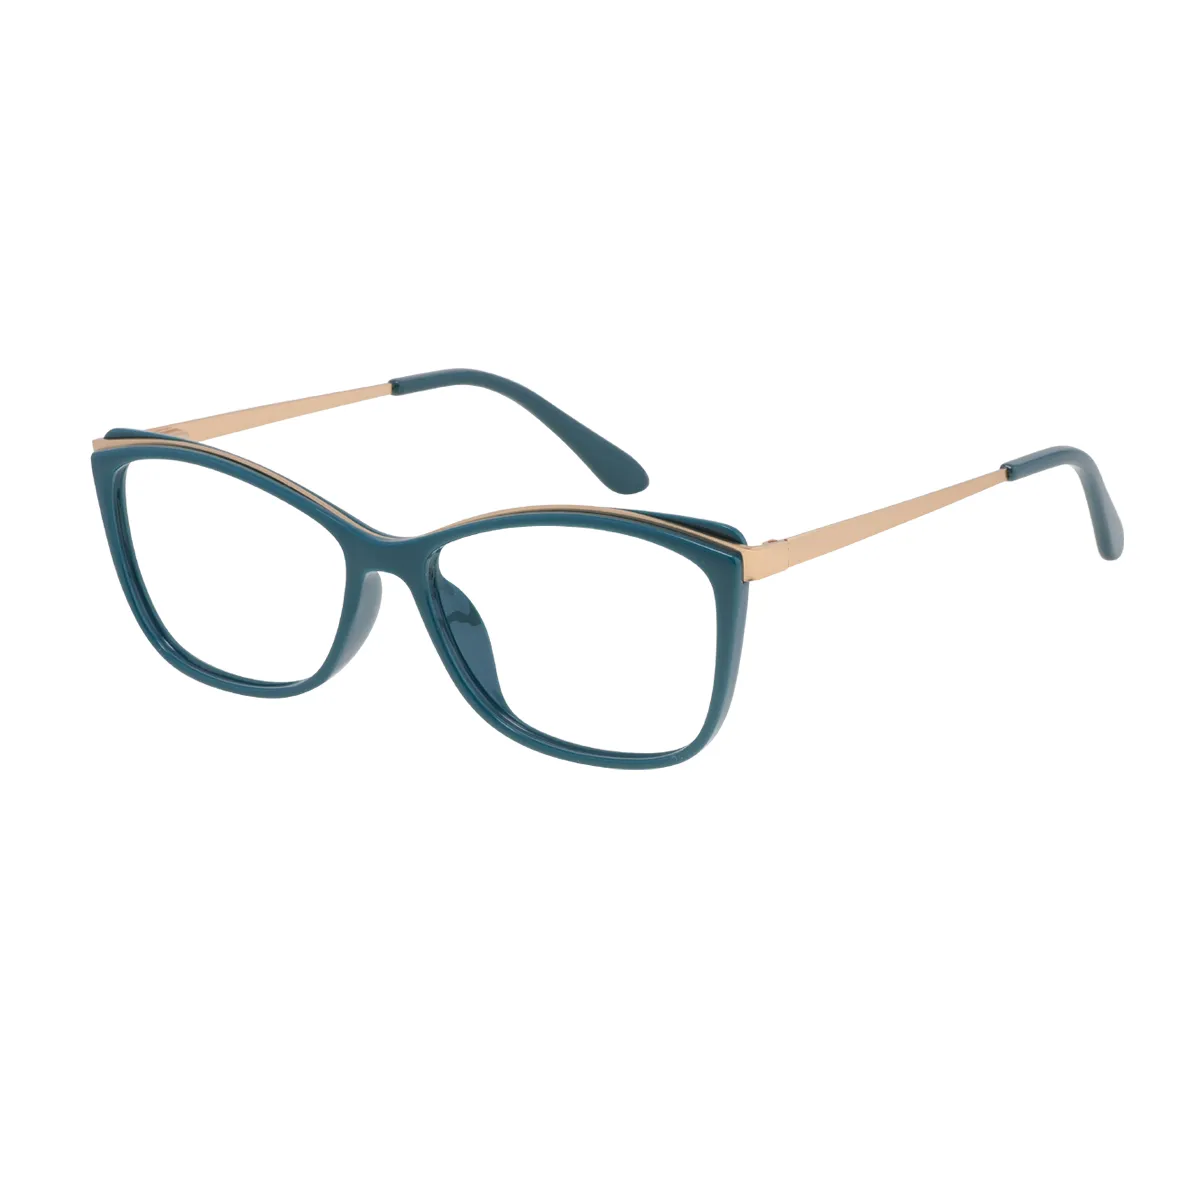 Avice - Cat-eye Green Glasses for Women - EFE